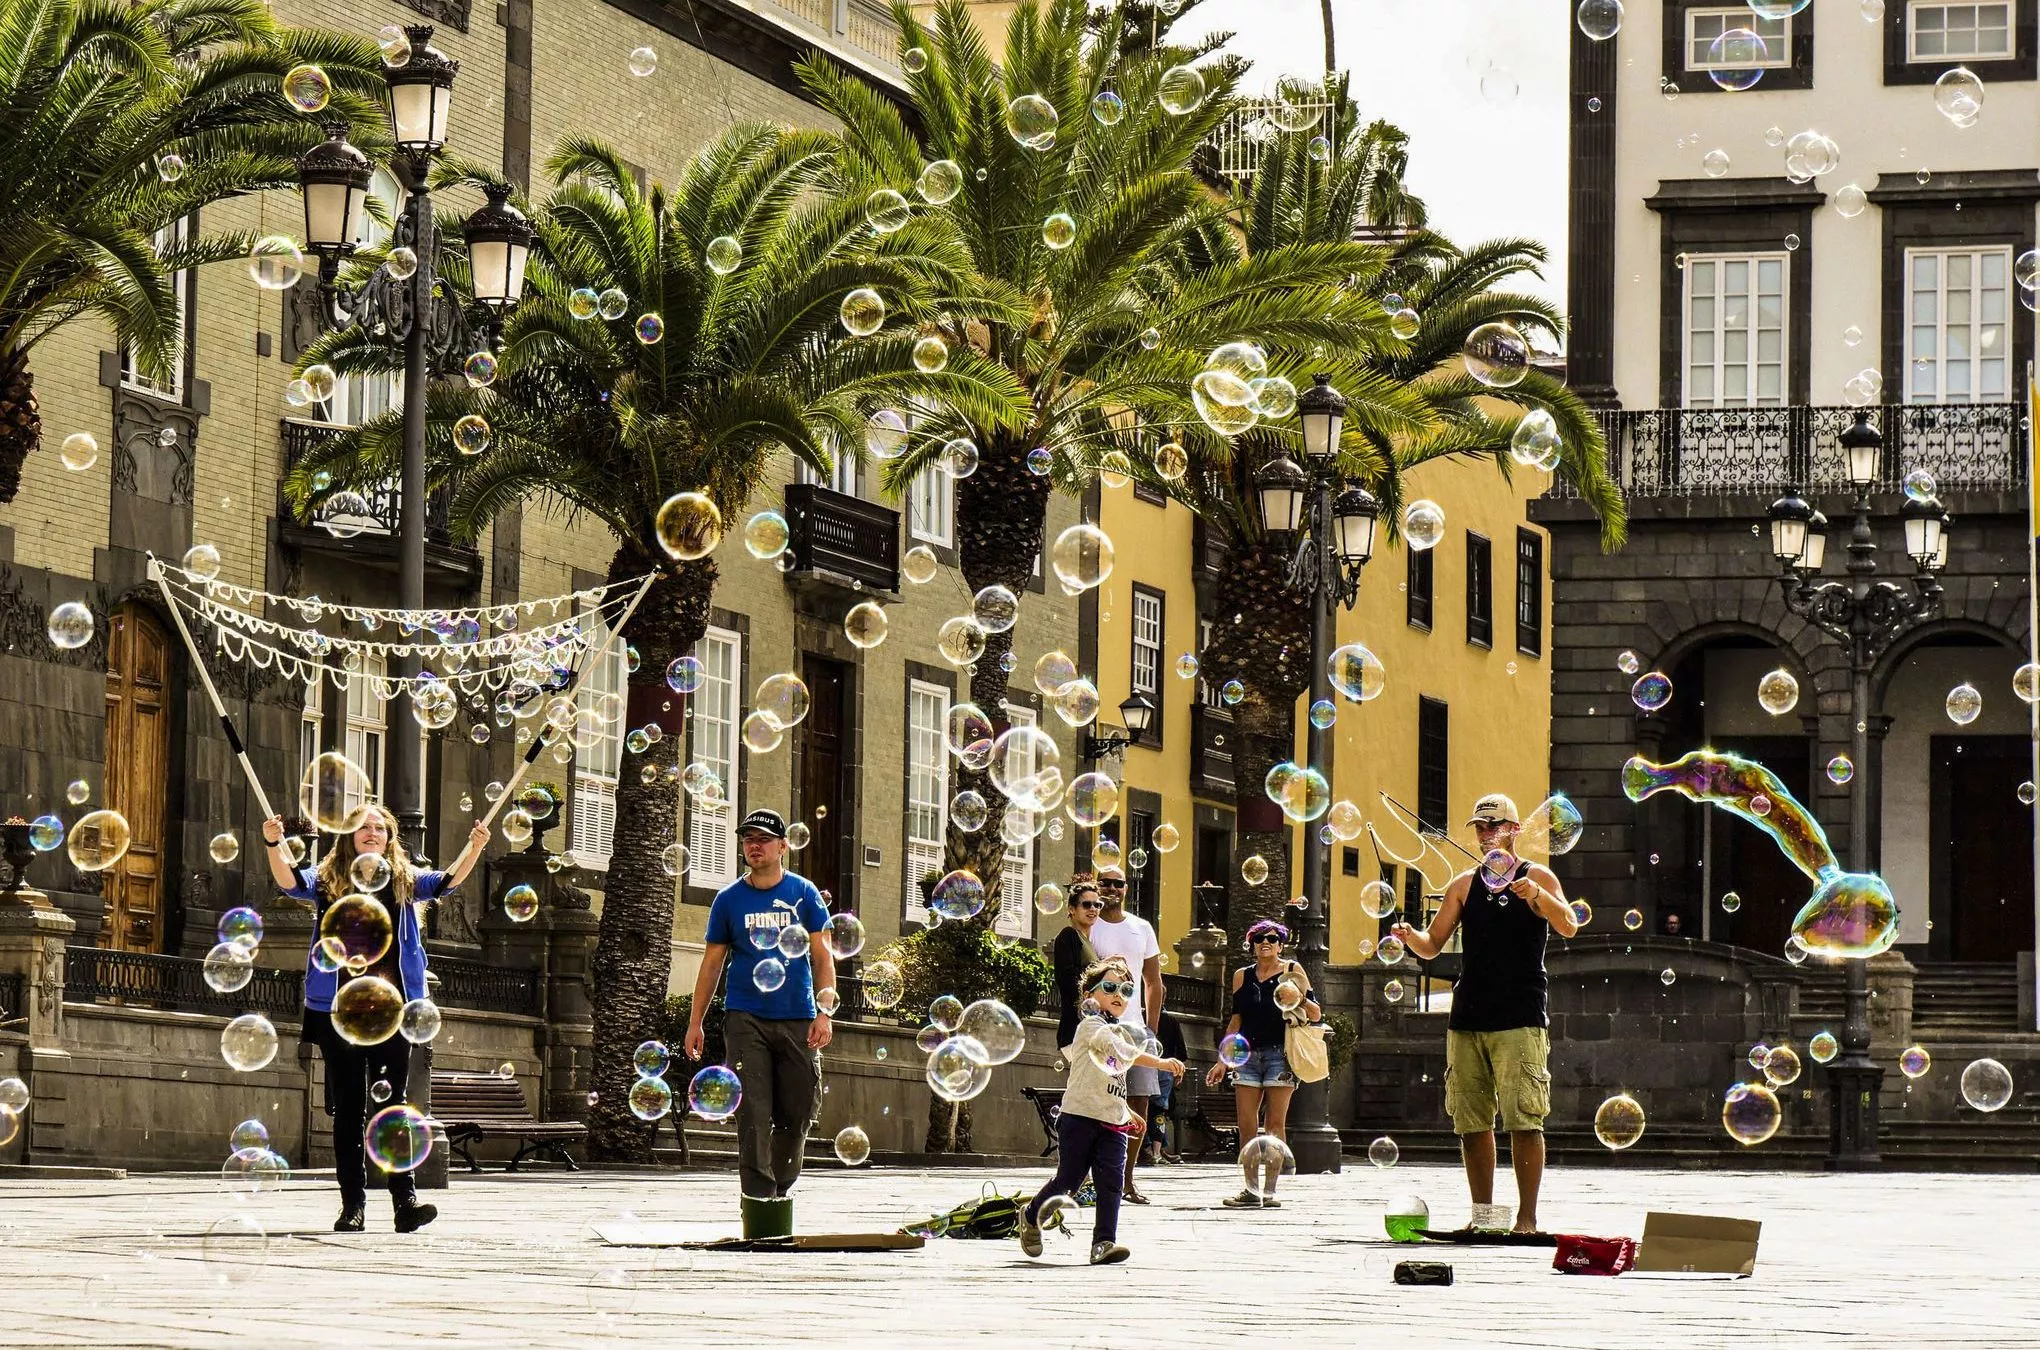 Seifenblasen-Künstler auf der Plaza Santa Ana in Las Palmas